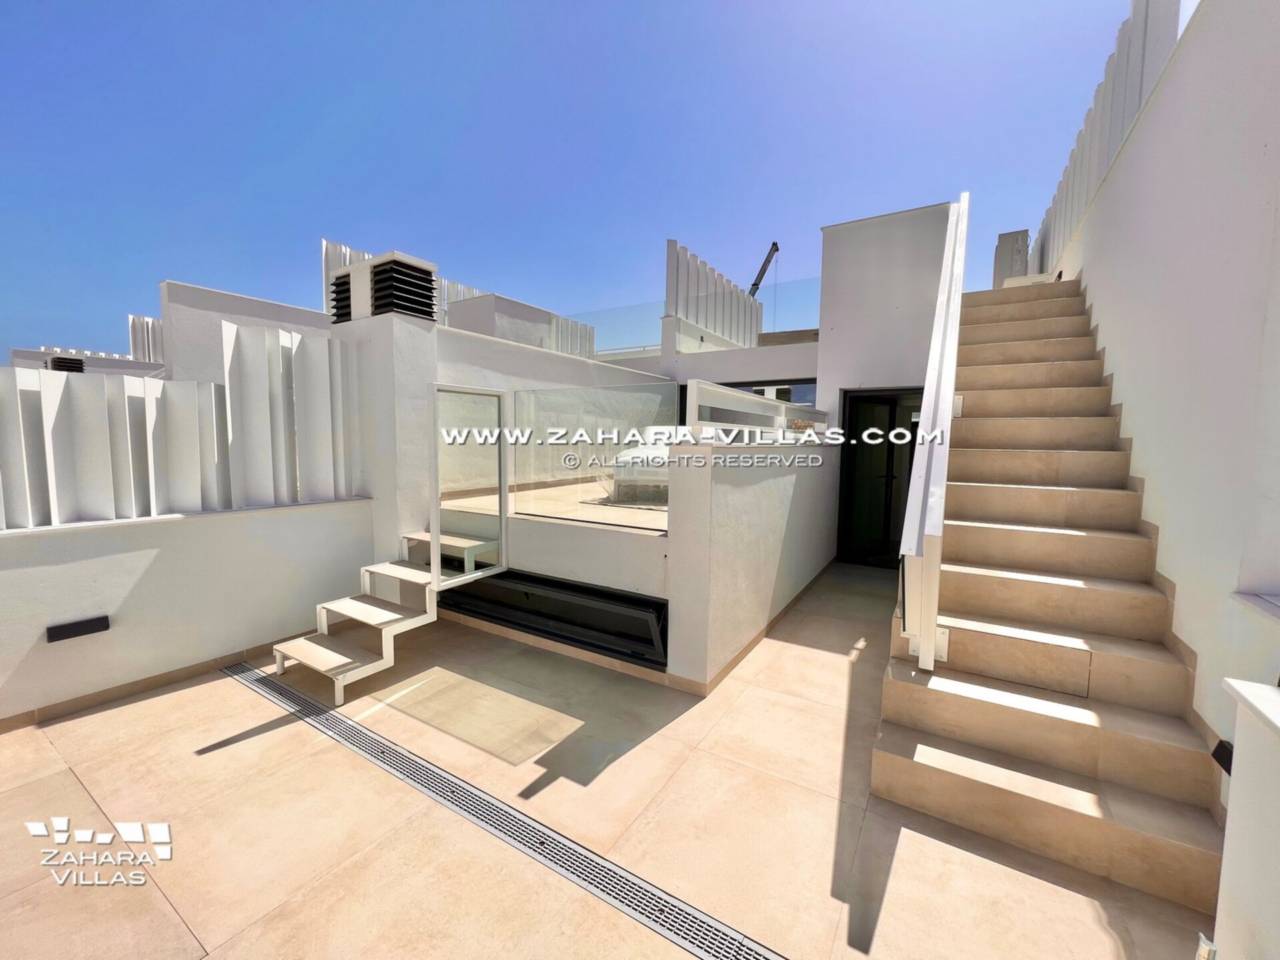 Imagen 34 de Promoción obra nueva terminada "EL OASIS DE ZAHARA" viviendas adosadas junto al mar